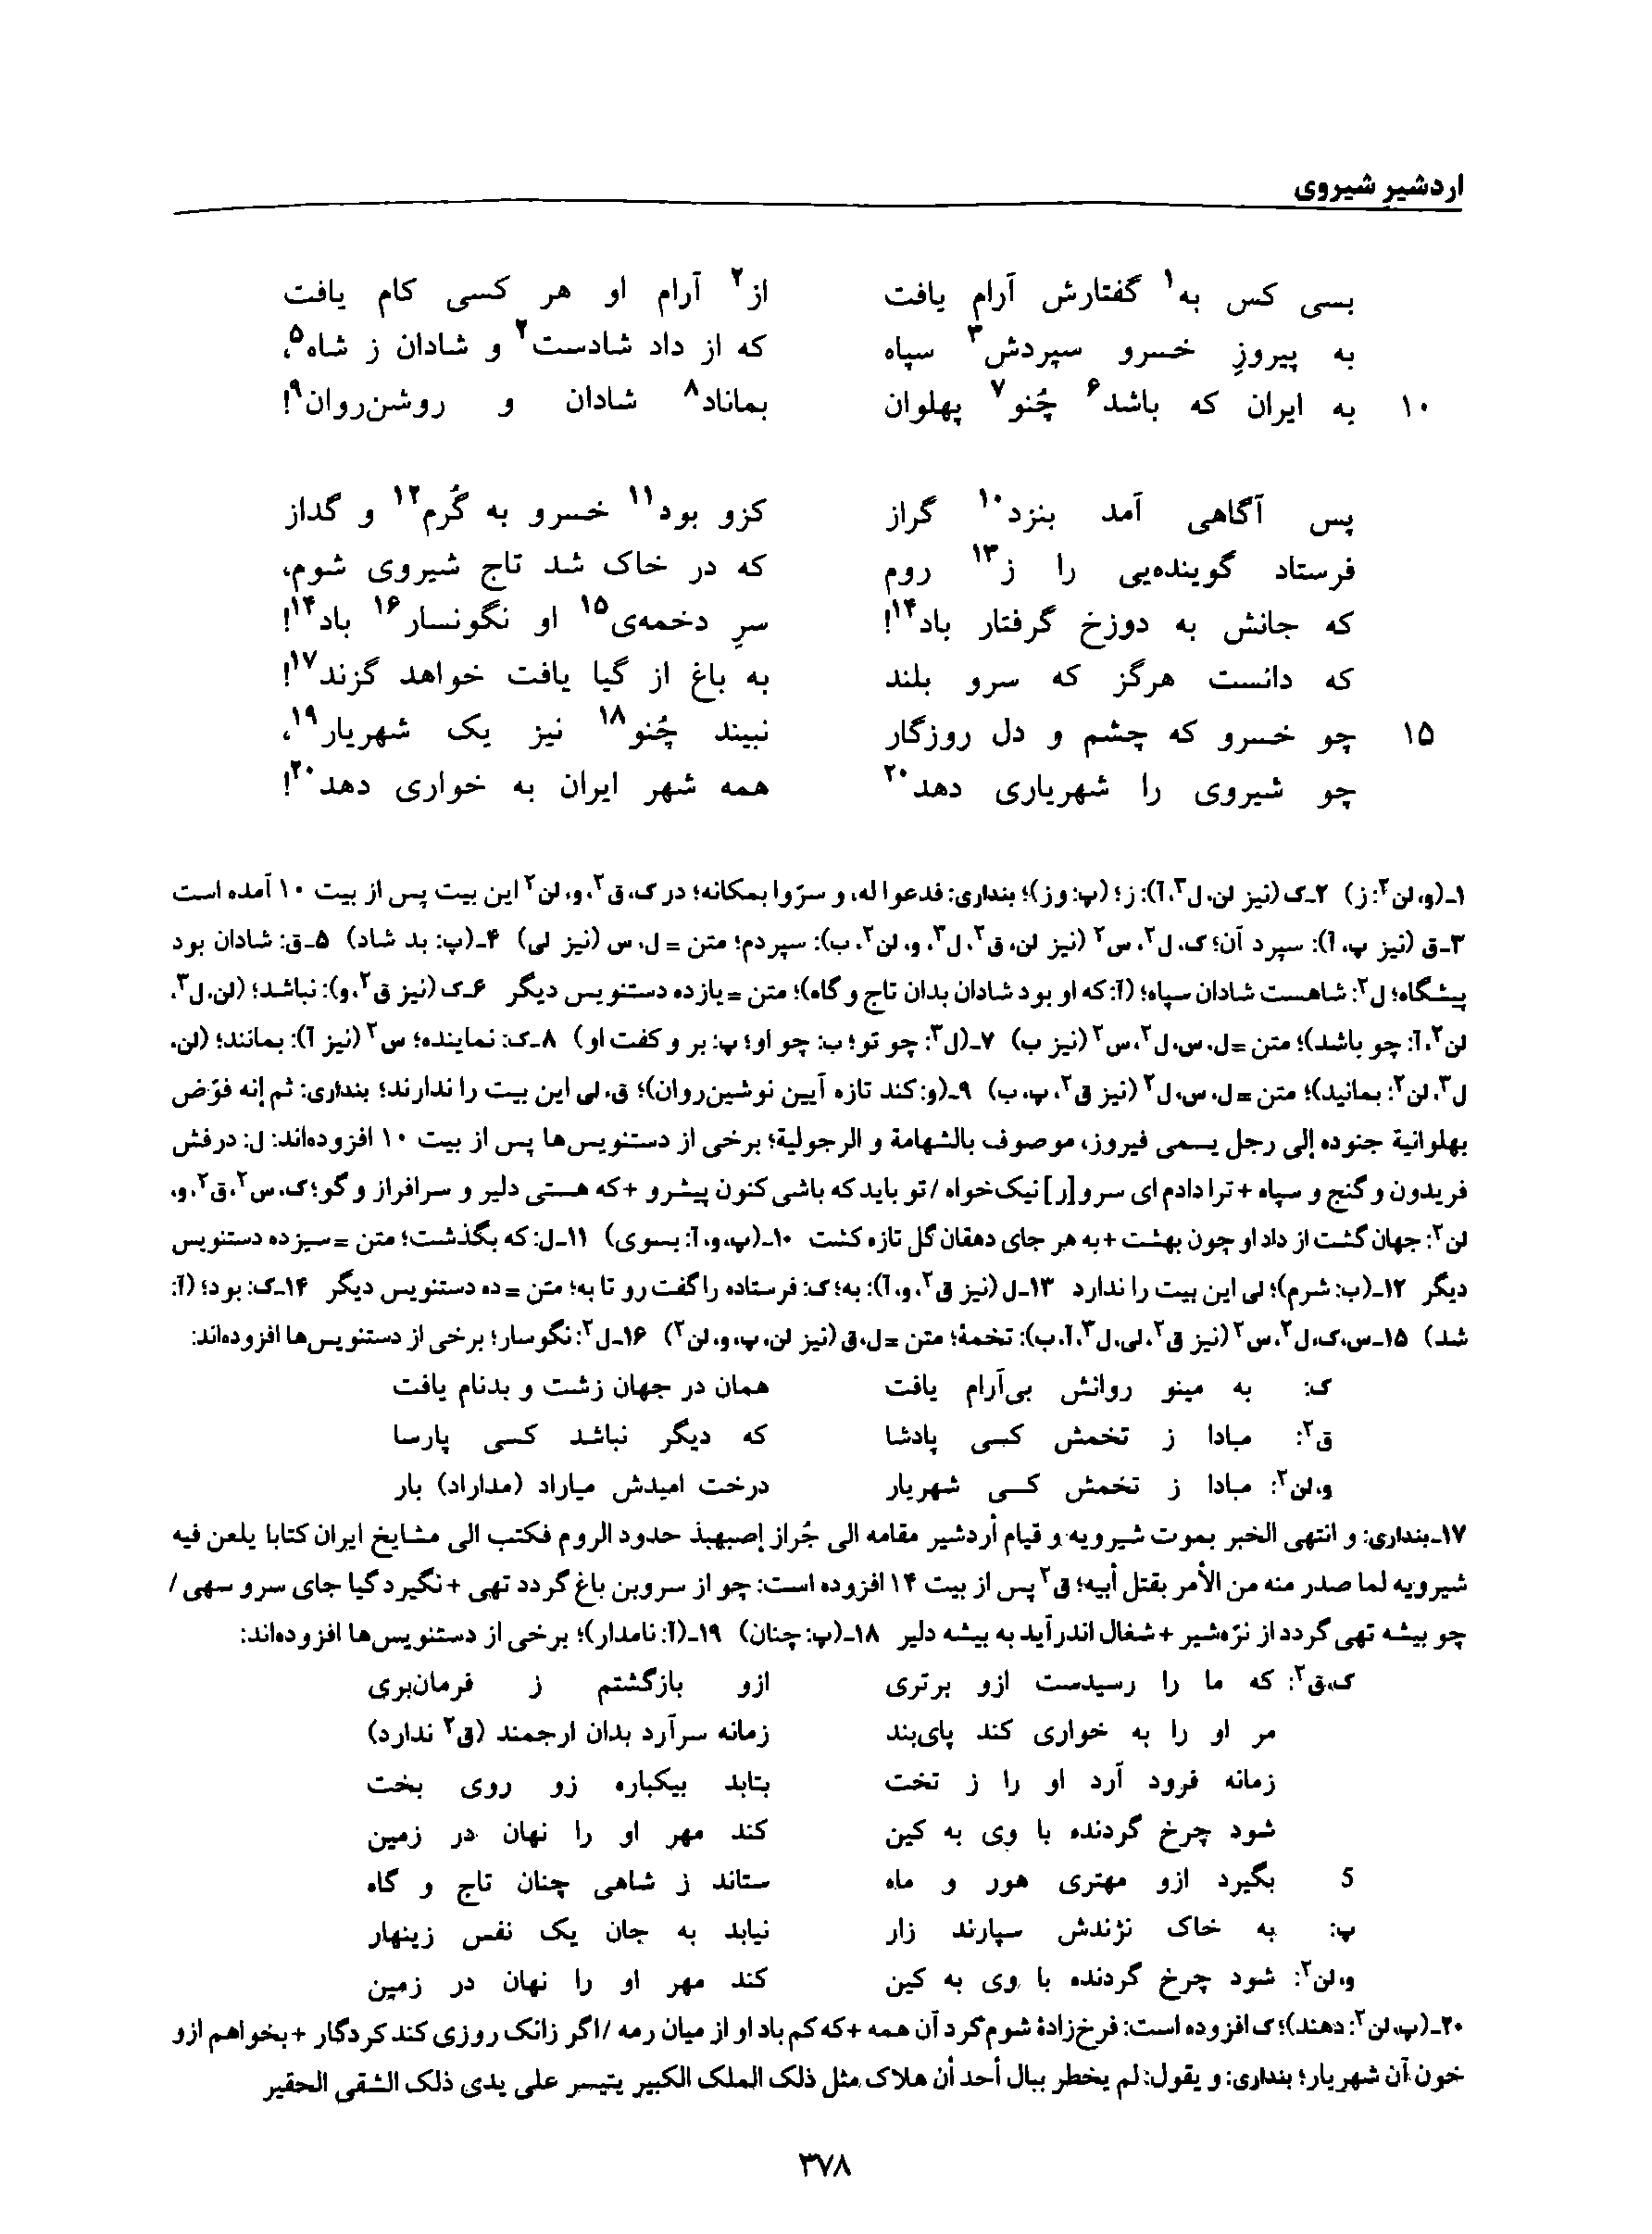 vol. 8, p. 378